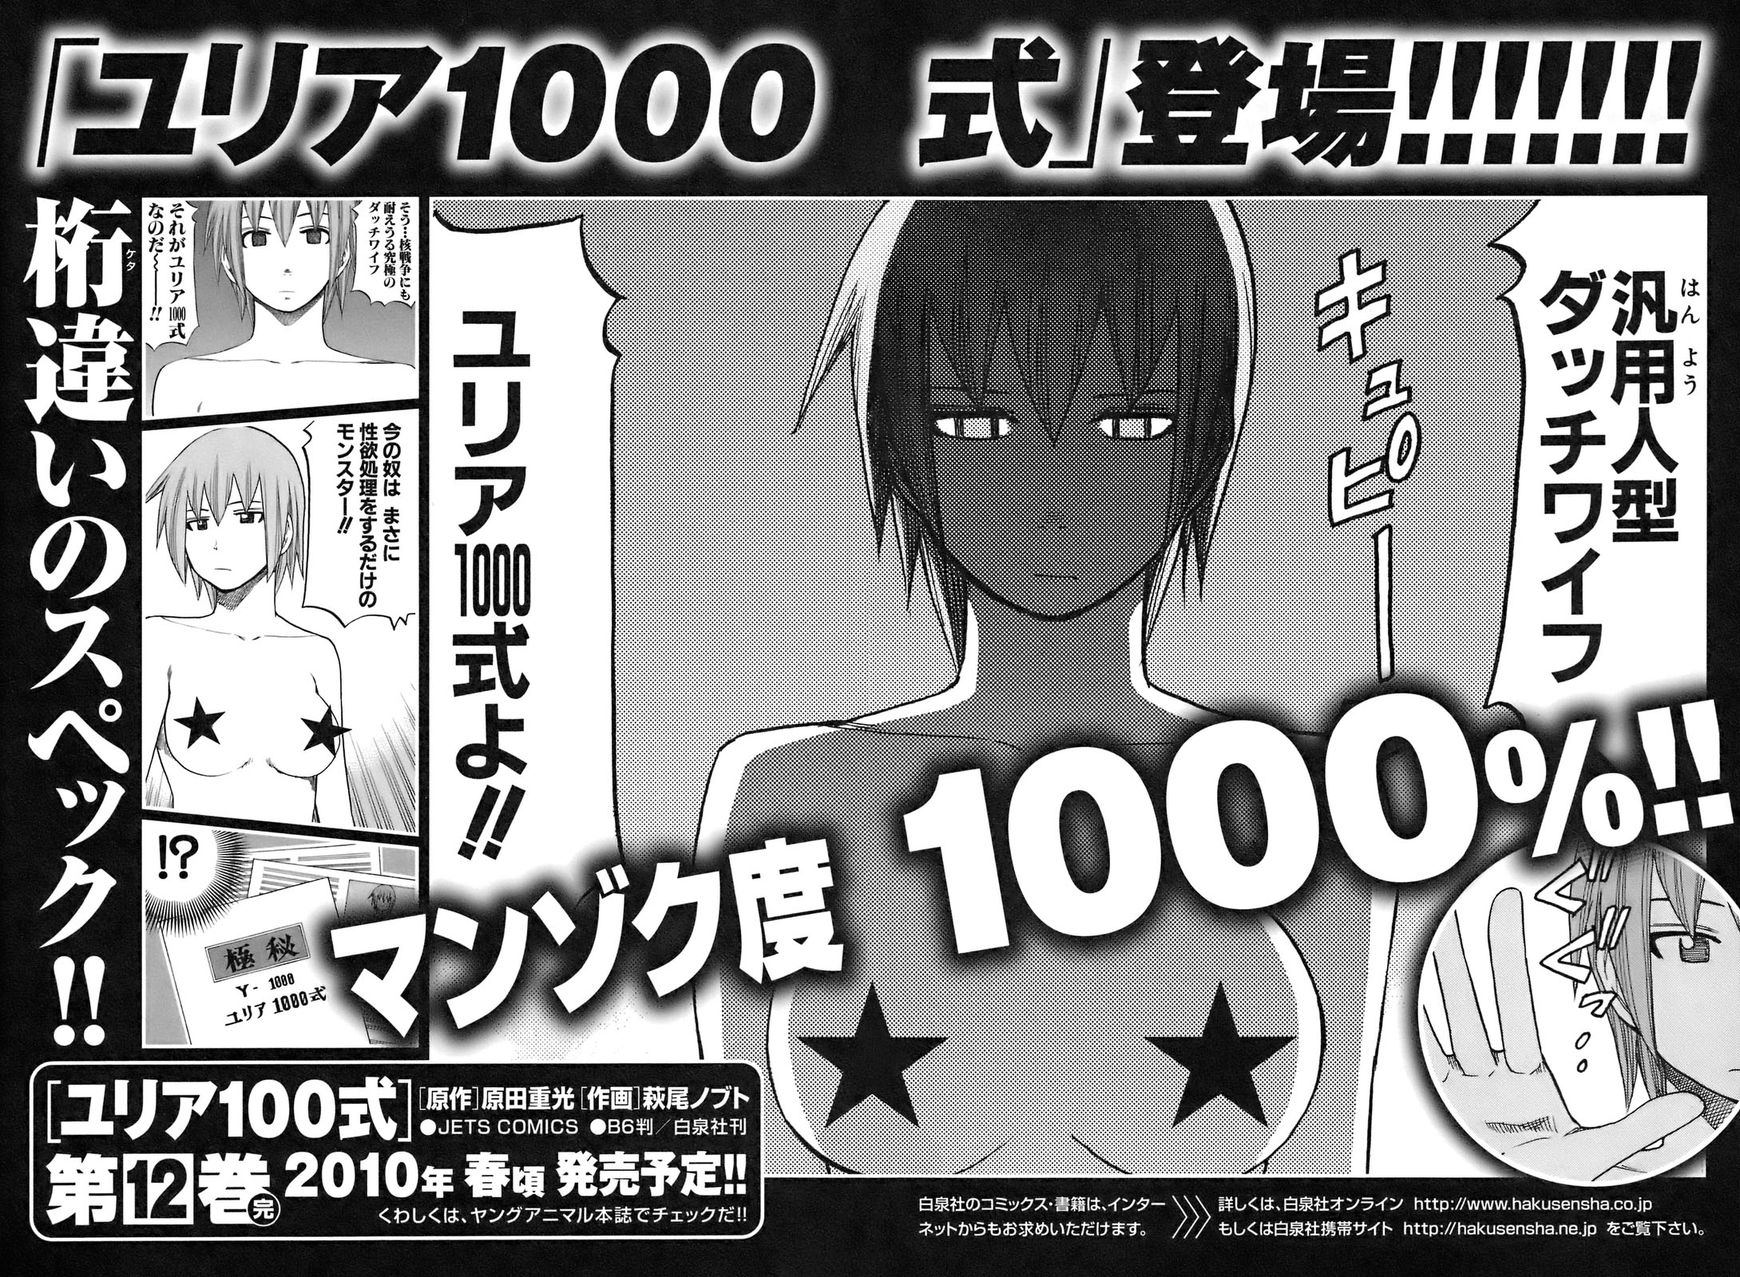 Yuria 100 Shiki 90.5